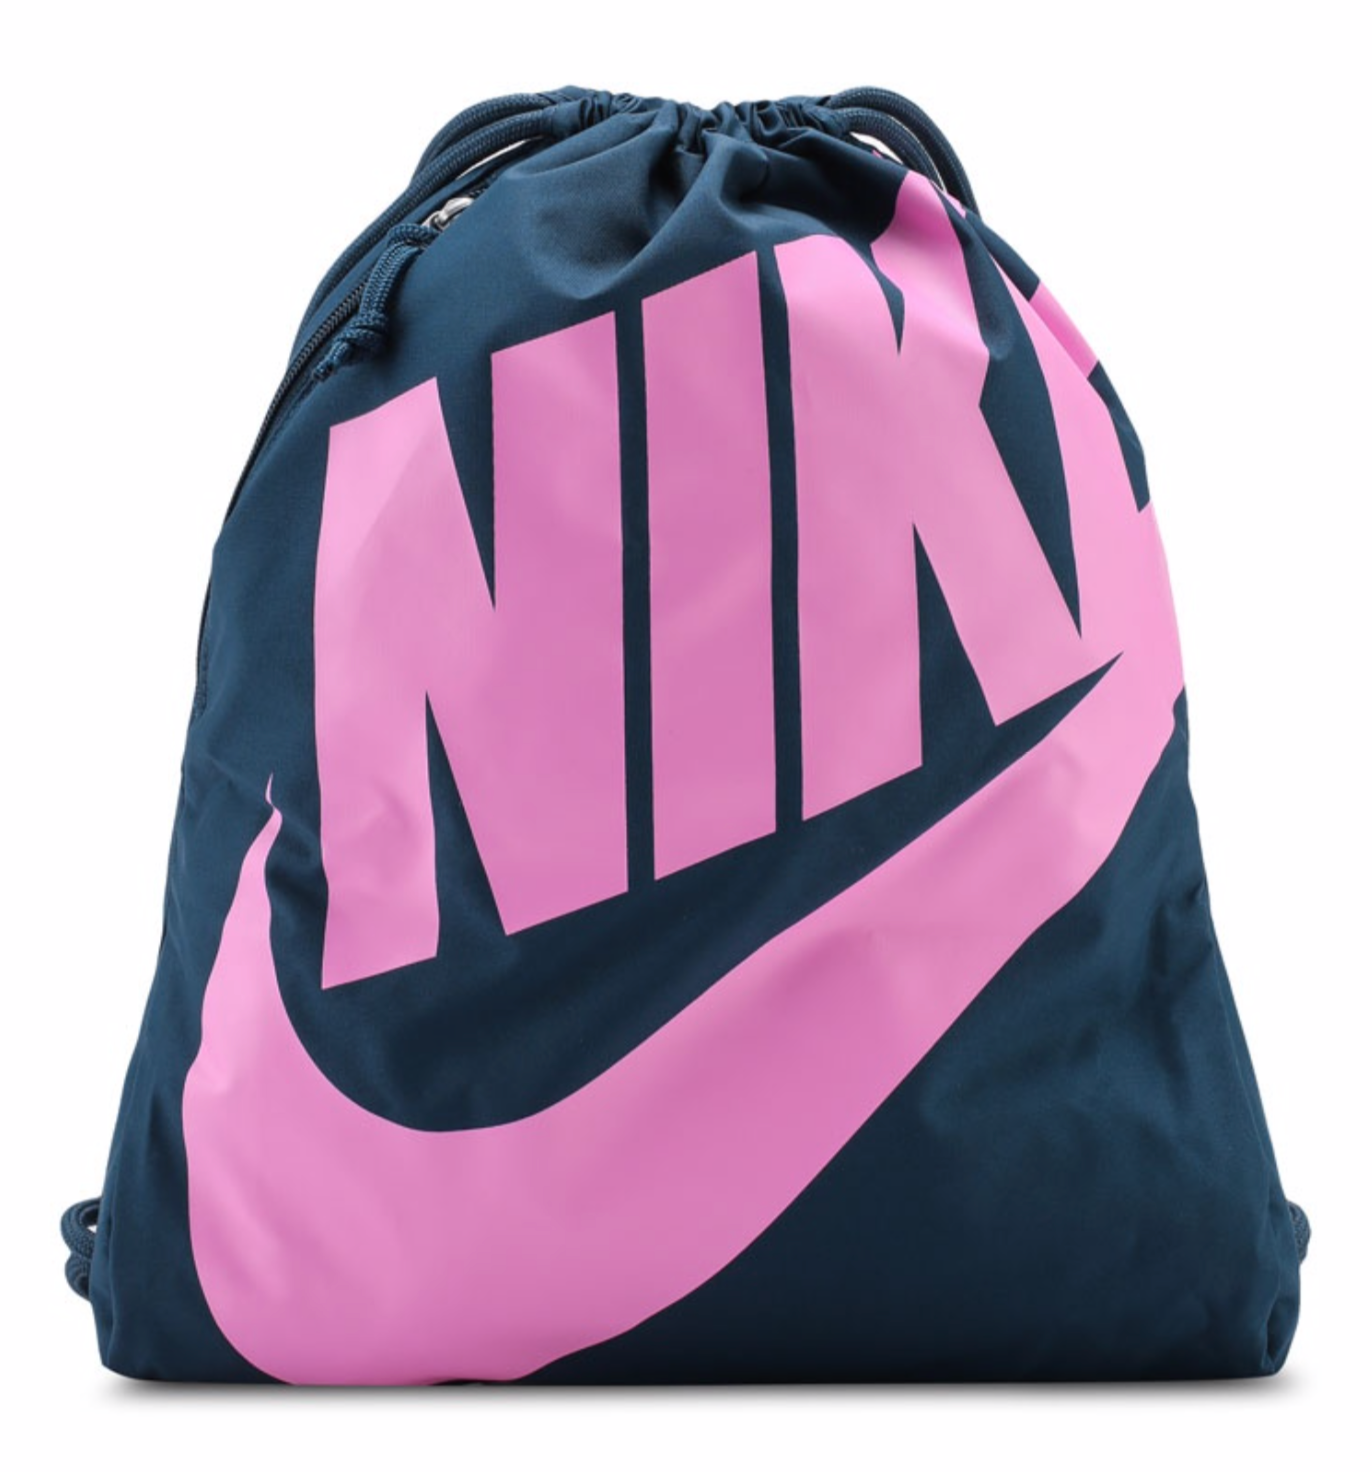 pink nike drawstring bag